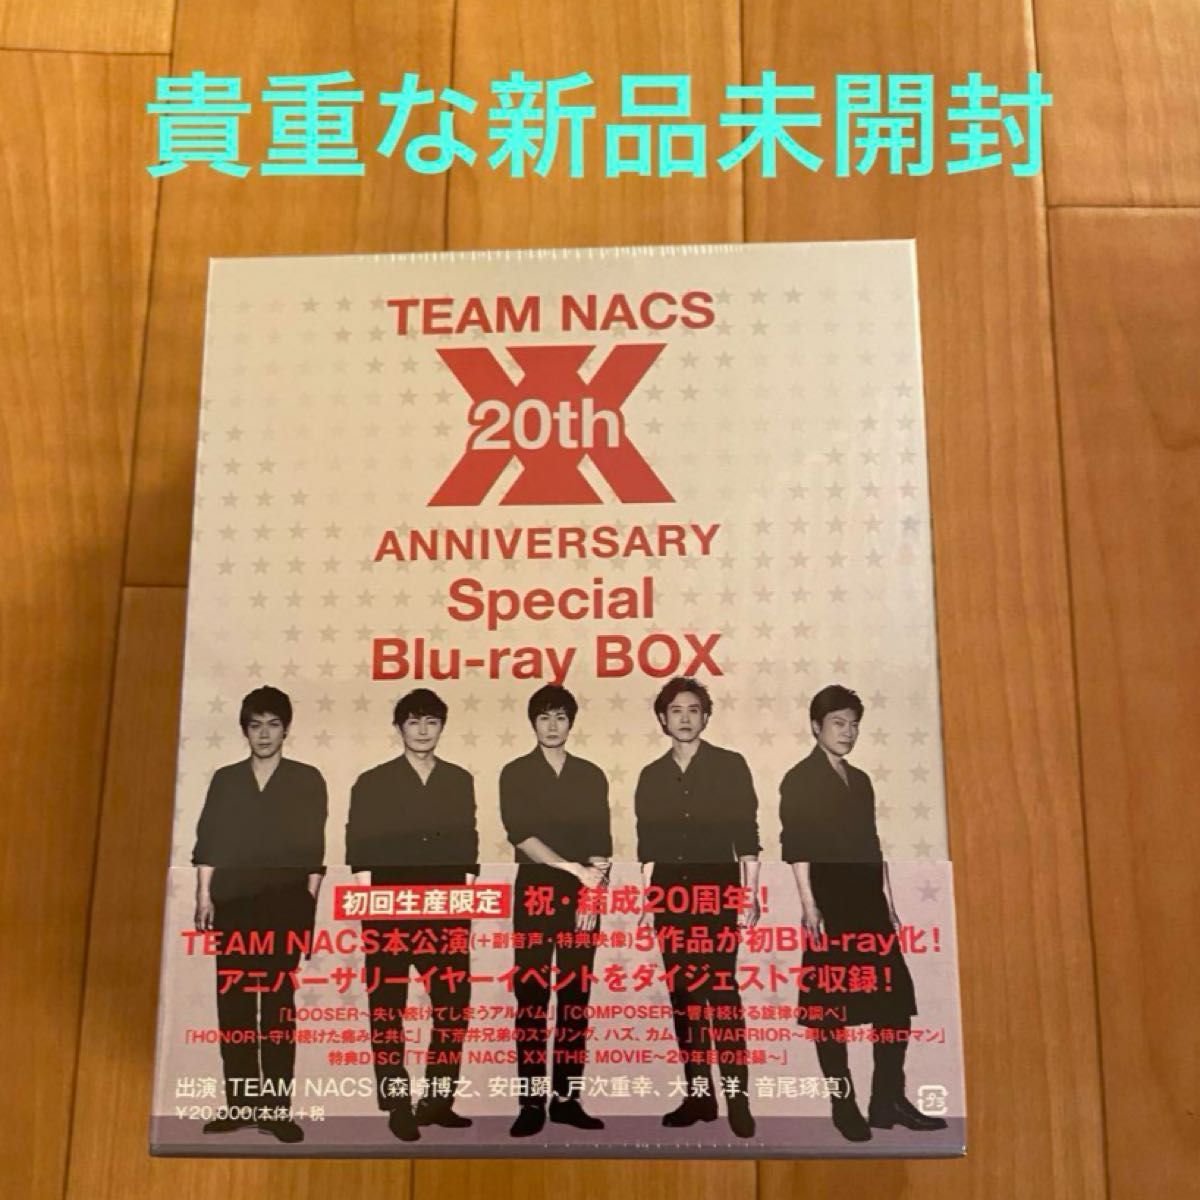 「TEAM NACS/20th ANNIVERSARY Special Blu-ray BOX〈初回生産限定・6枚組〉」新品未開封